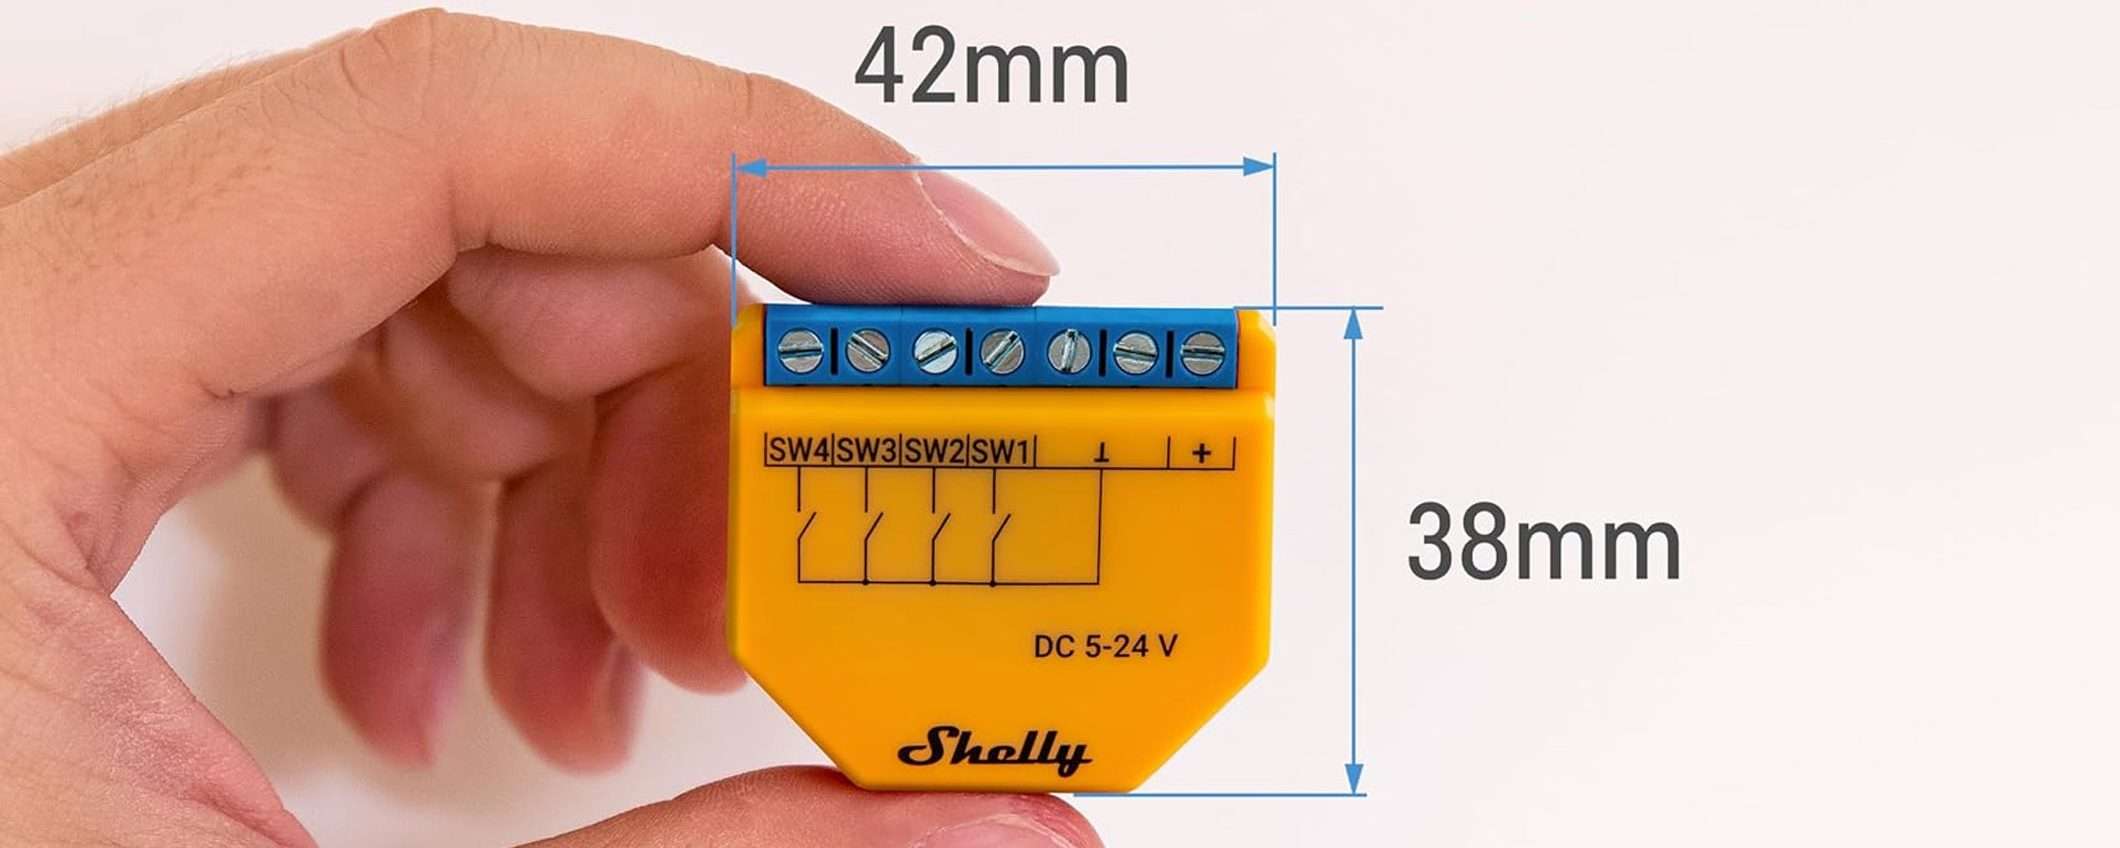 Sconto su Shelly Plus i4 DC: occasione per il controller Wi-Fi e BT